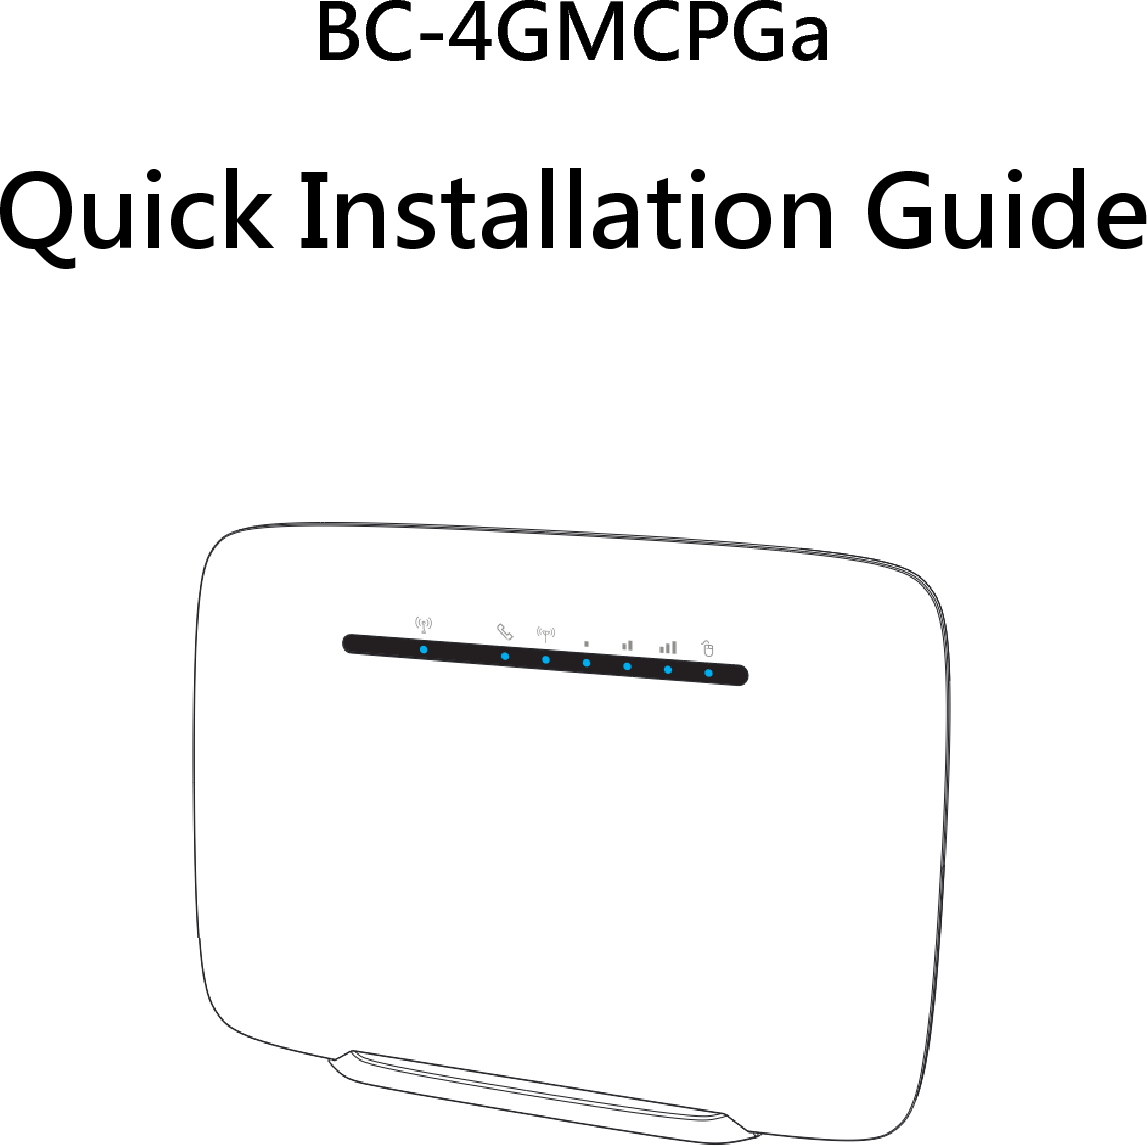   BC-4GMCPGa   Quick Installation Guide             